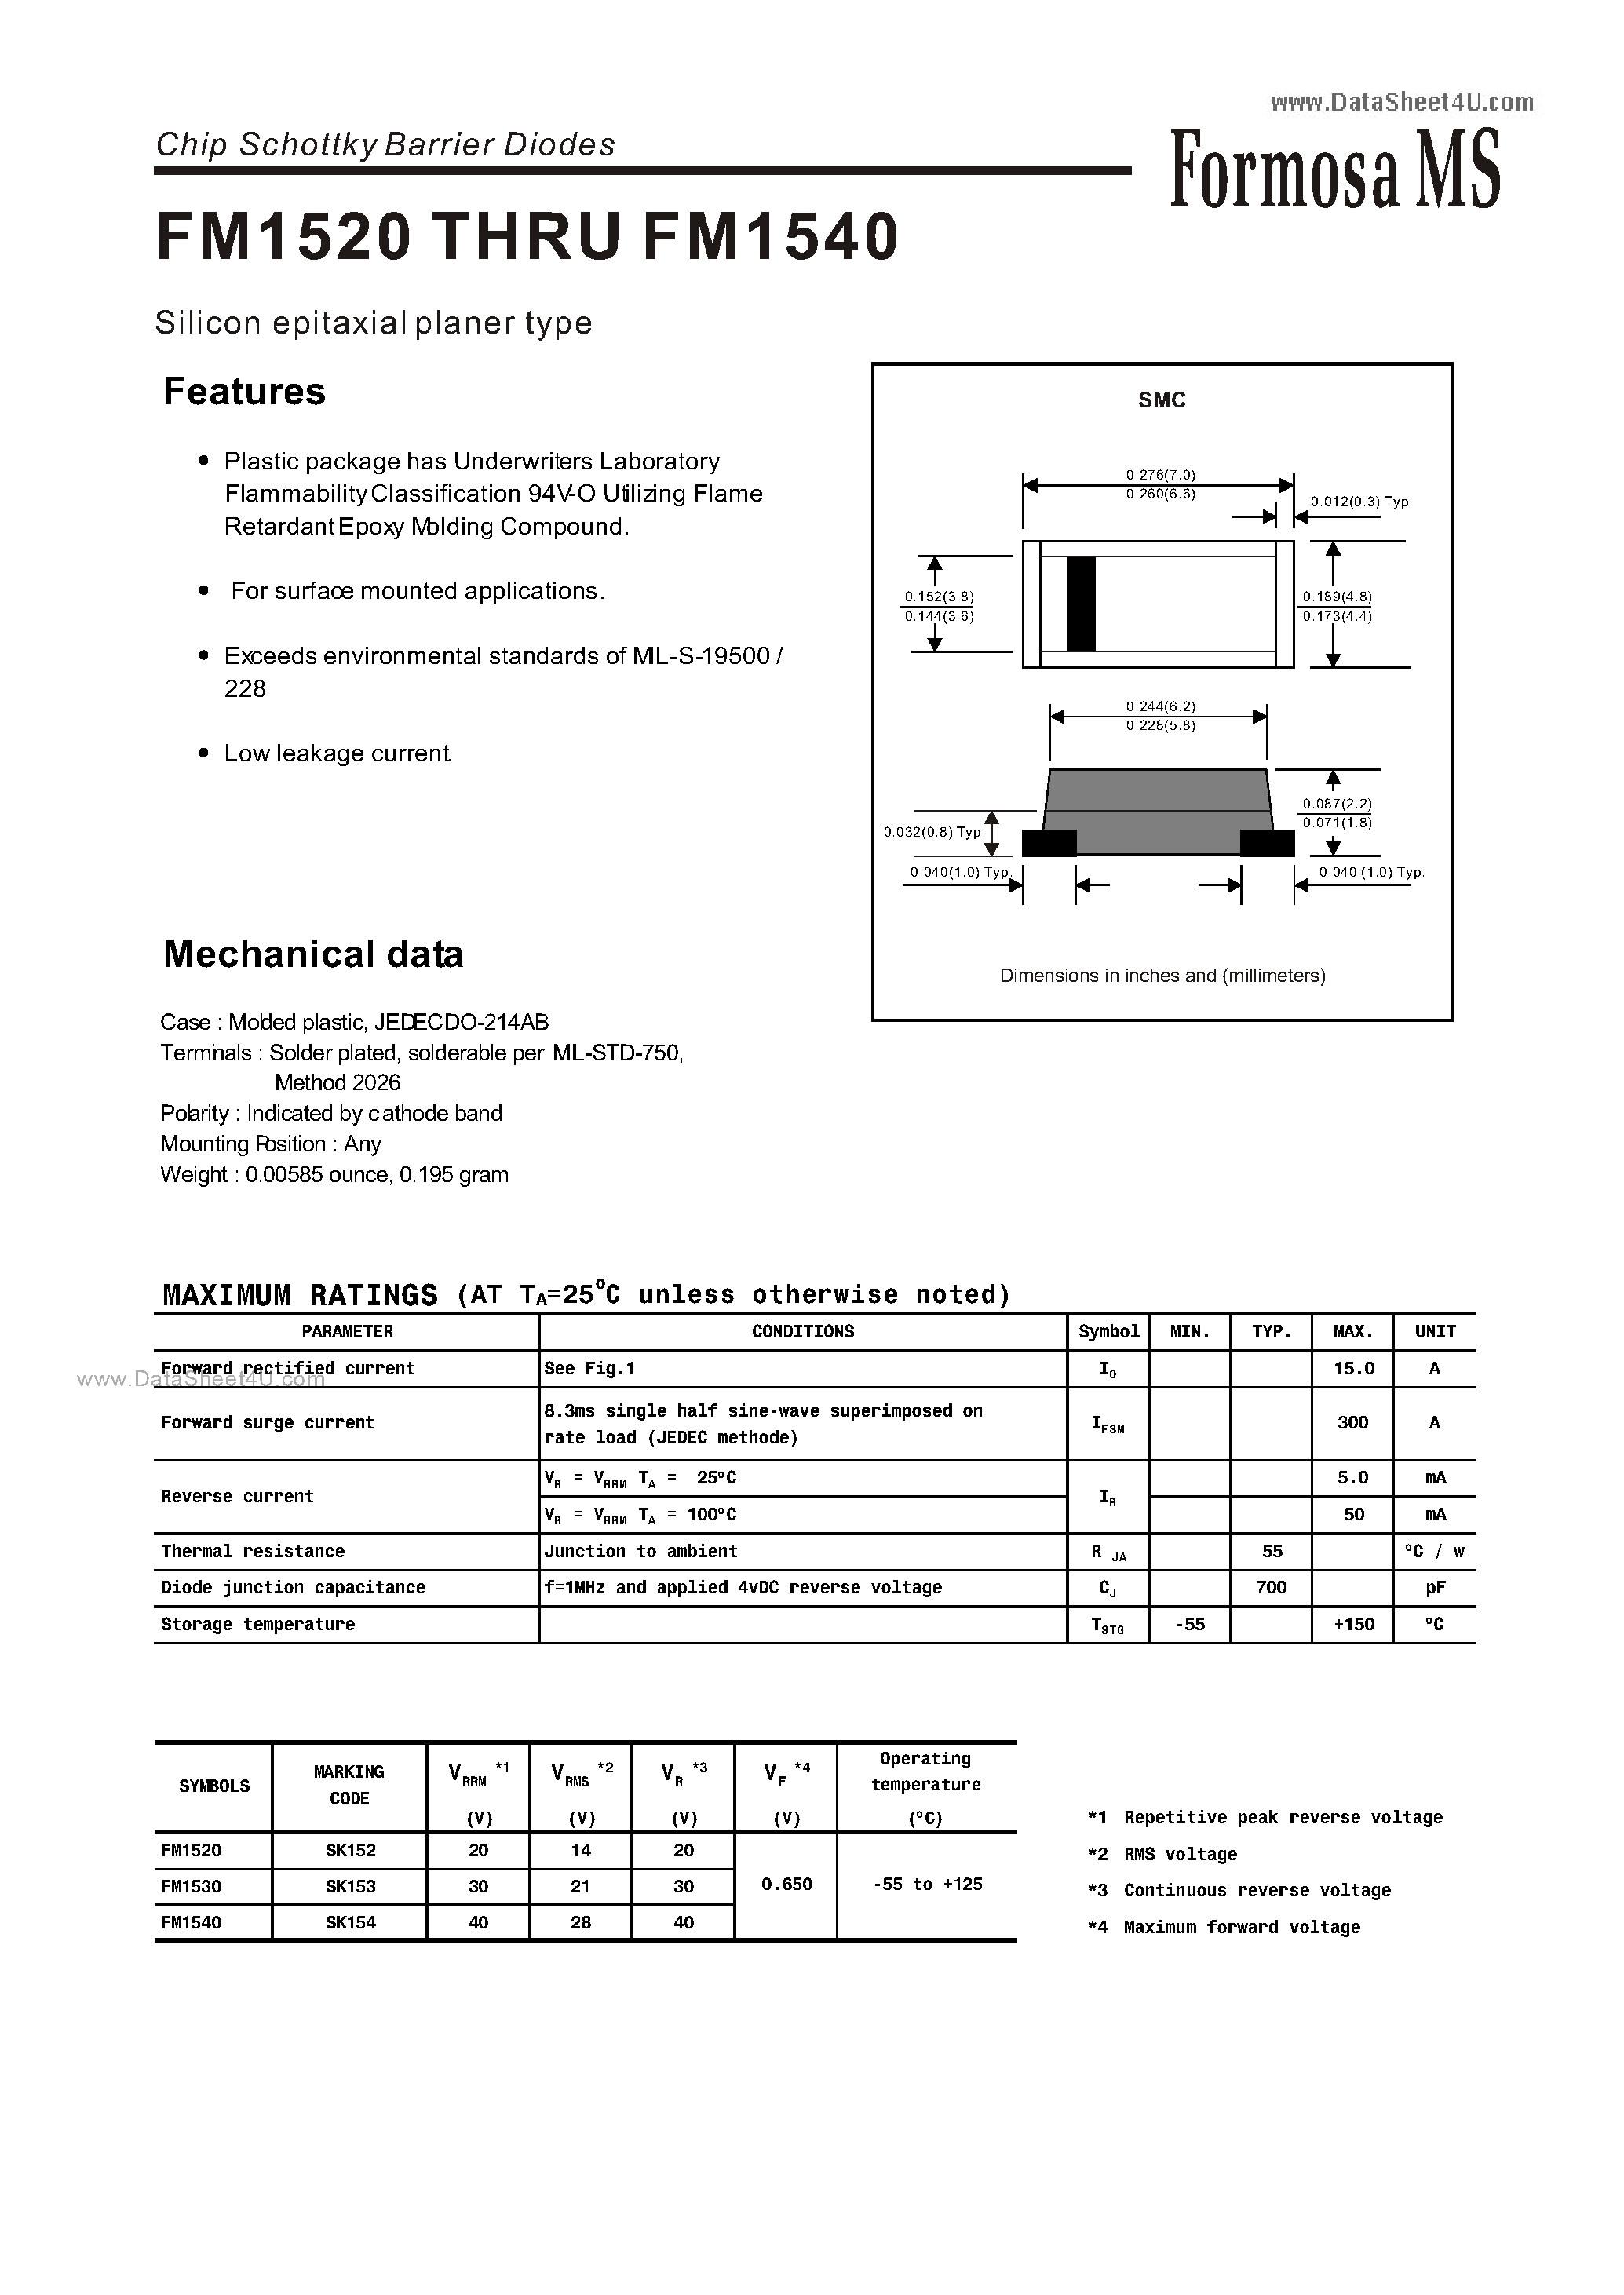 Datasheet FM1520 - (FM1520 - FM1540) Chip Schottky Barrier Diodes page 1